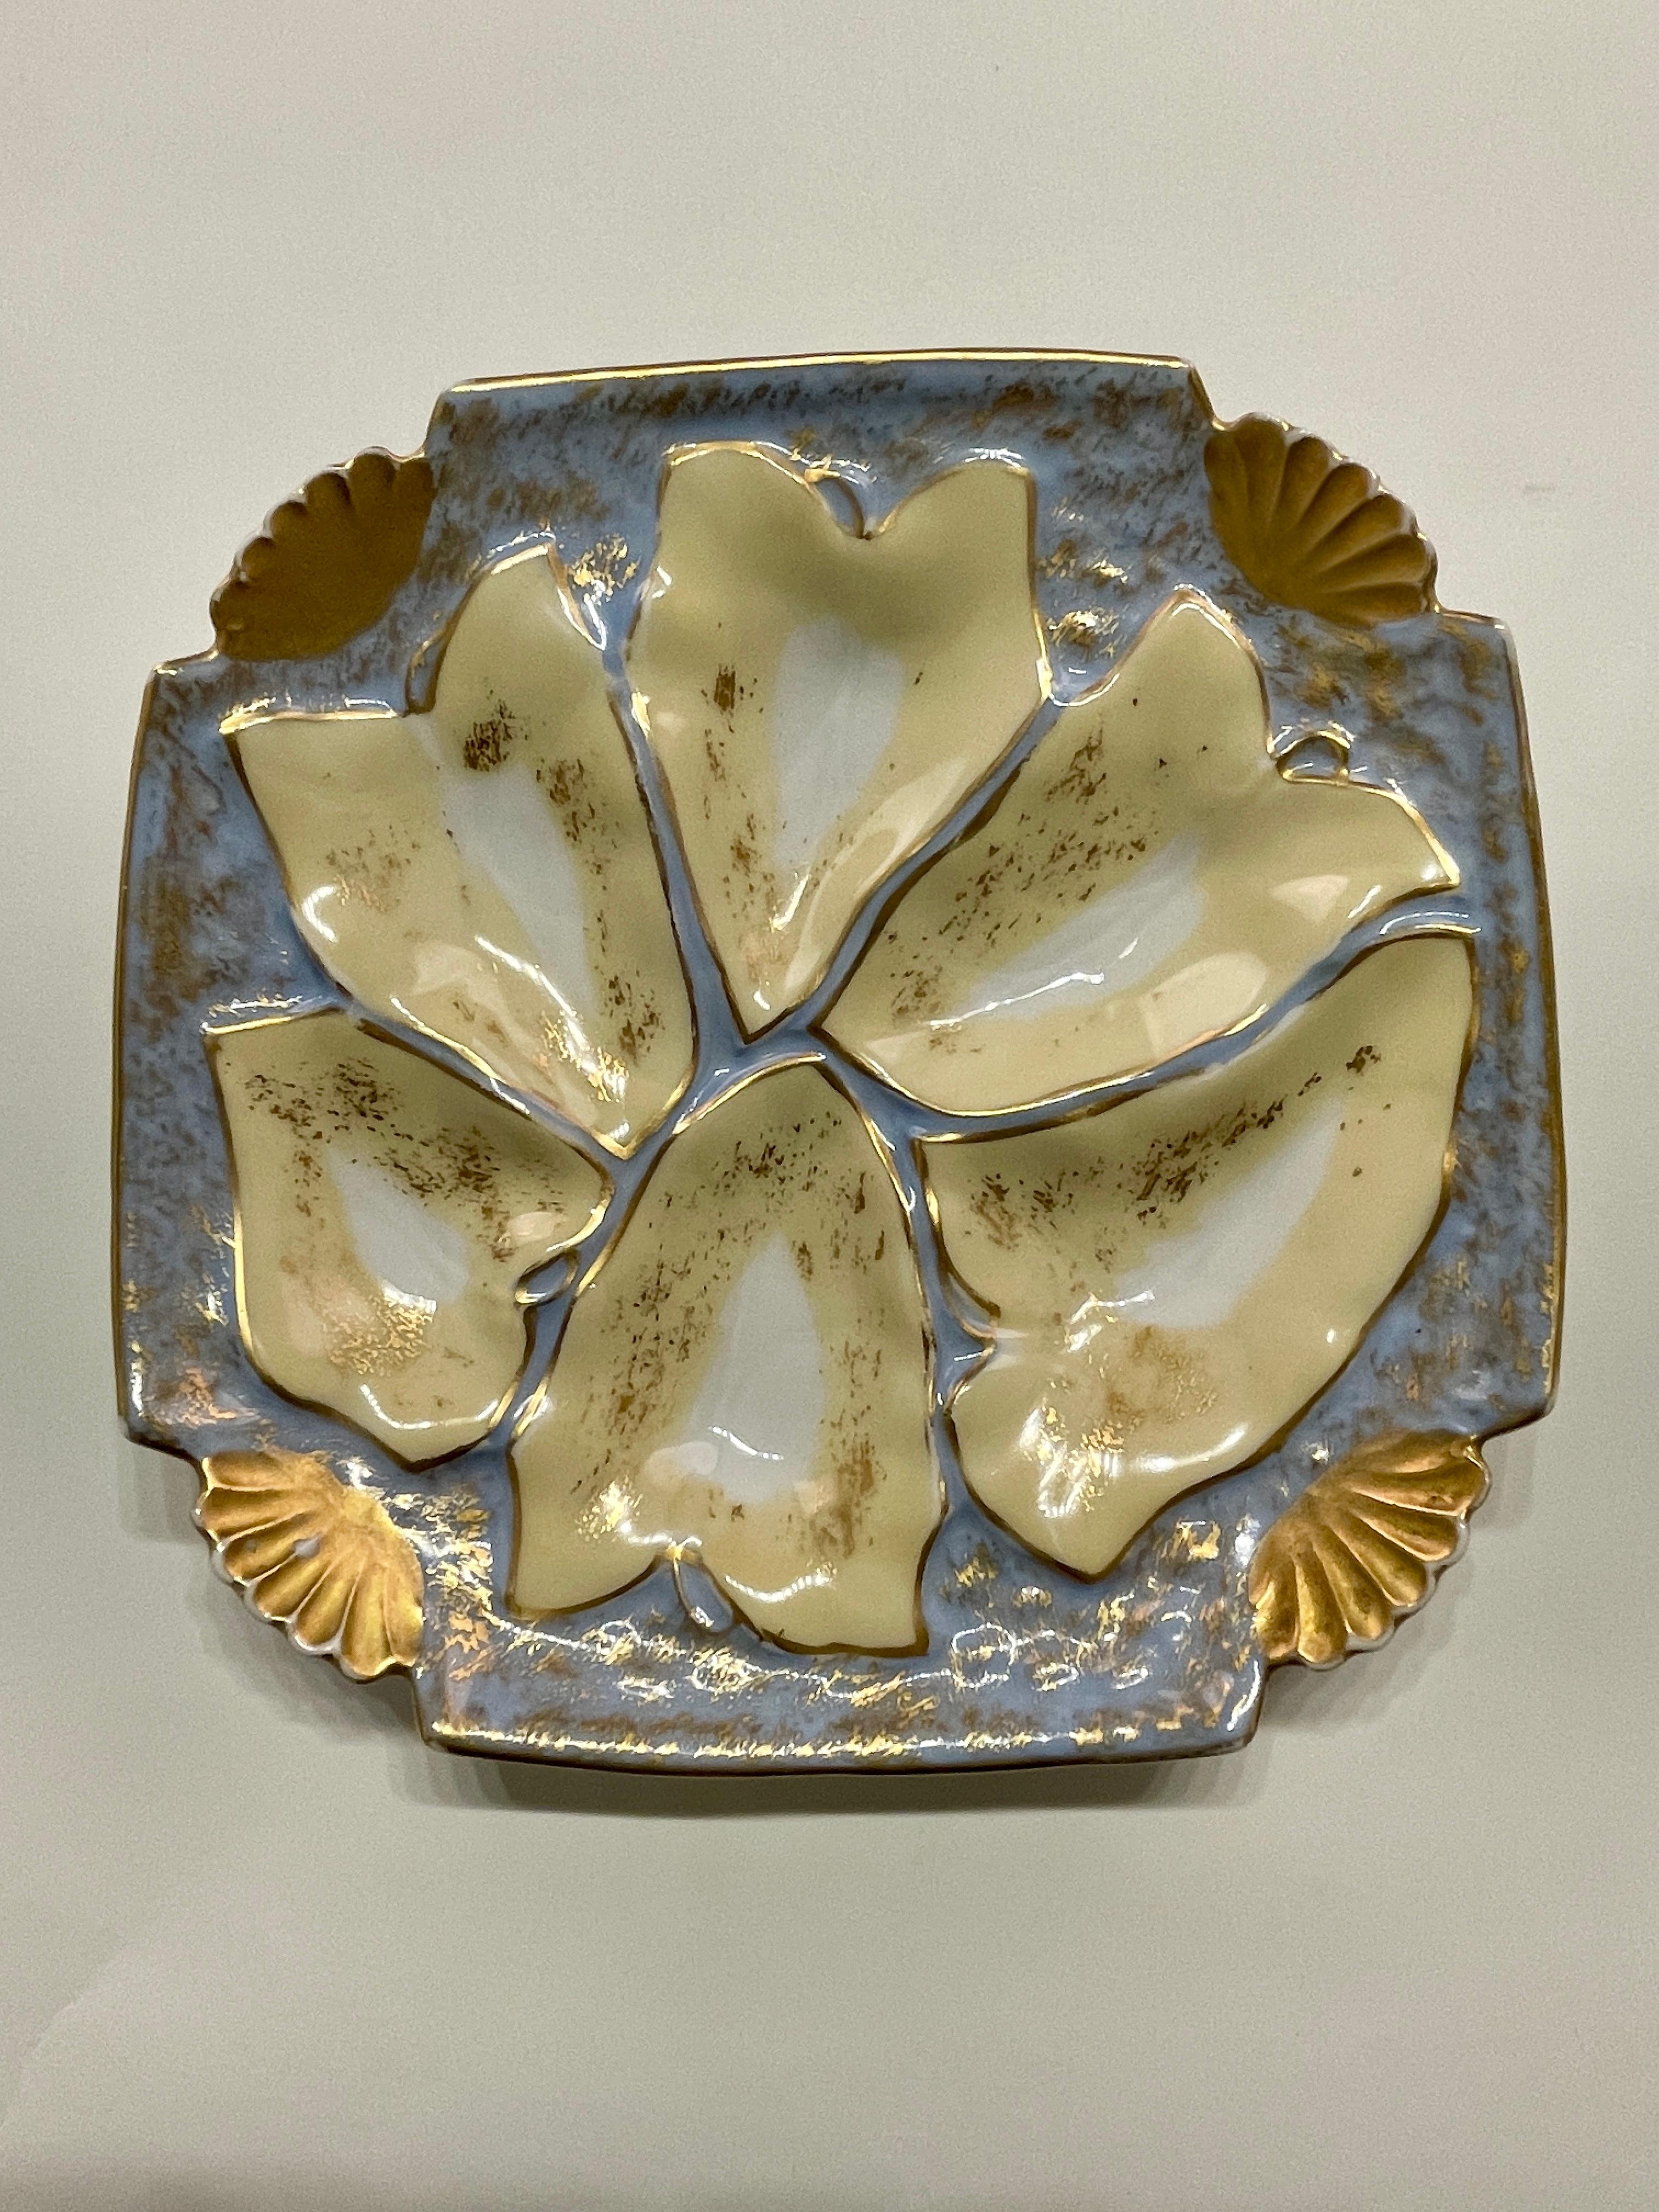 Une bonne assiette à huîtres en porcelaine de Limoges de couleur bleu pâle et jaune entourée de feuilles d'or. En très bon état, sans ébréchures ni traces de cheveux. La plaque est carrée de 8,25 pouces et haute de 1,25 pouce. Circa 1880-1900. #